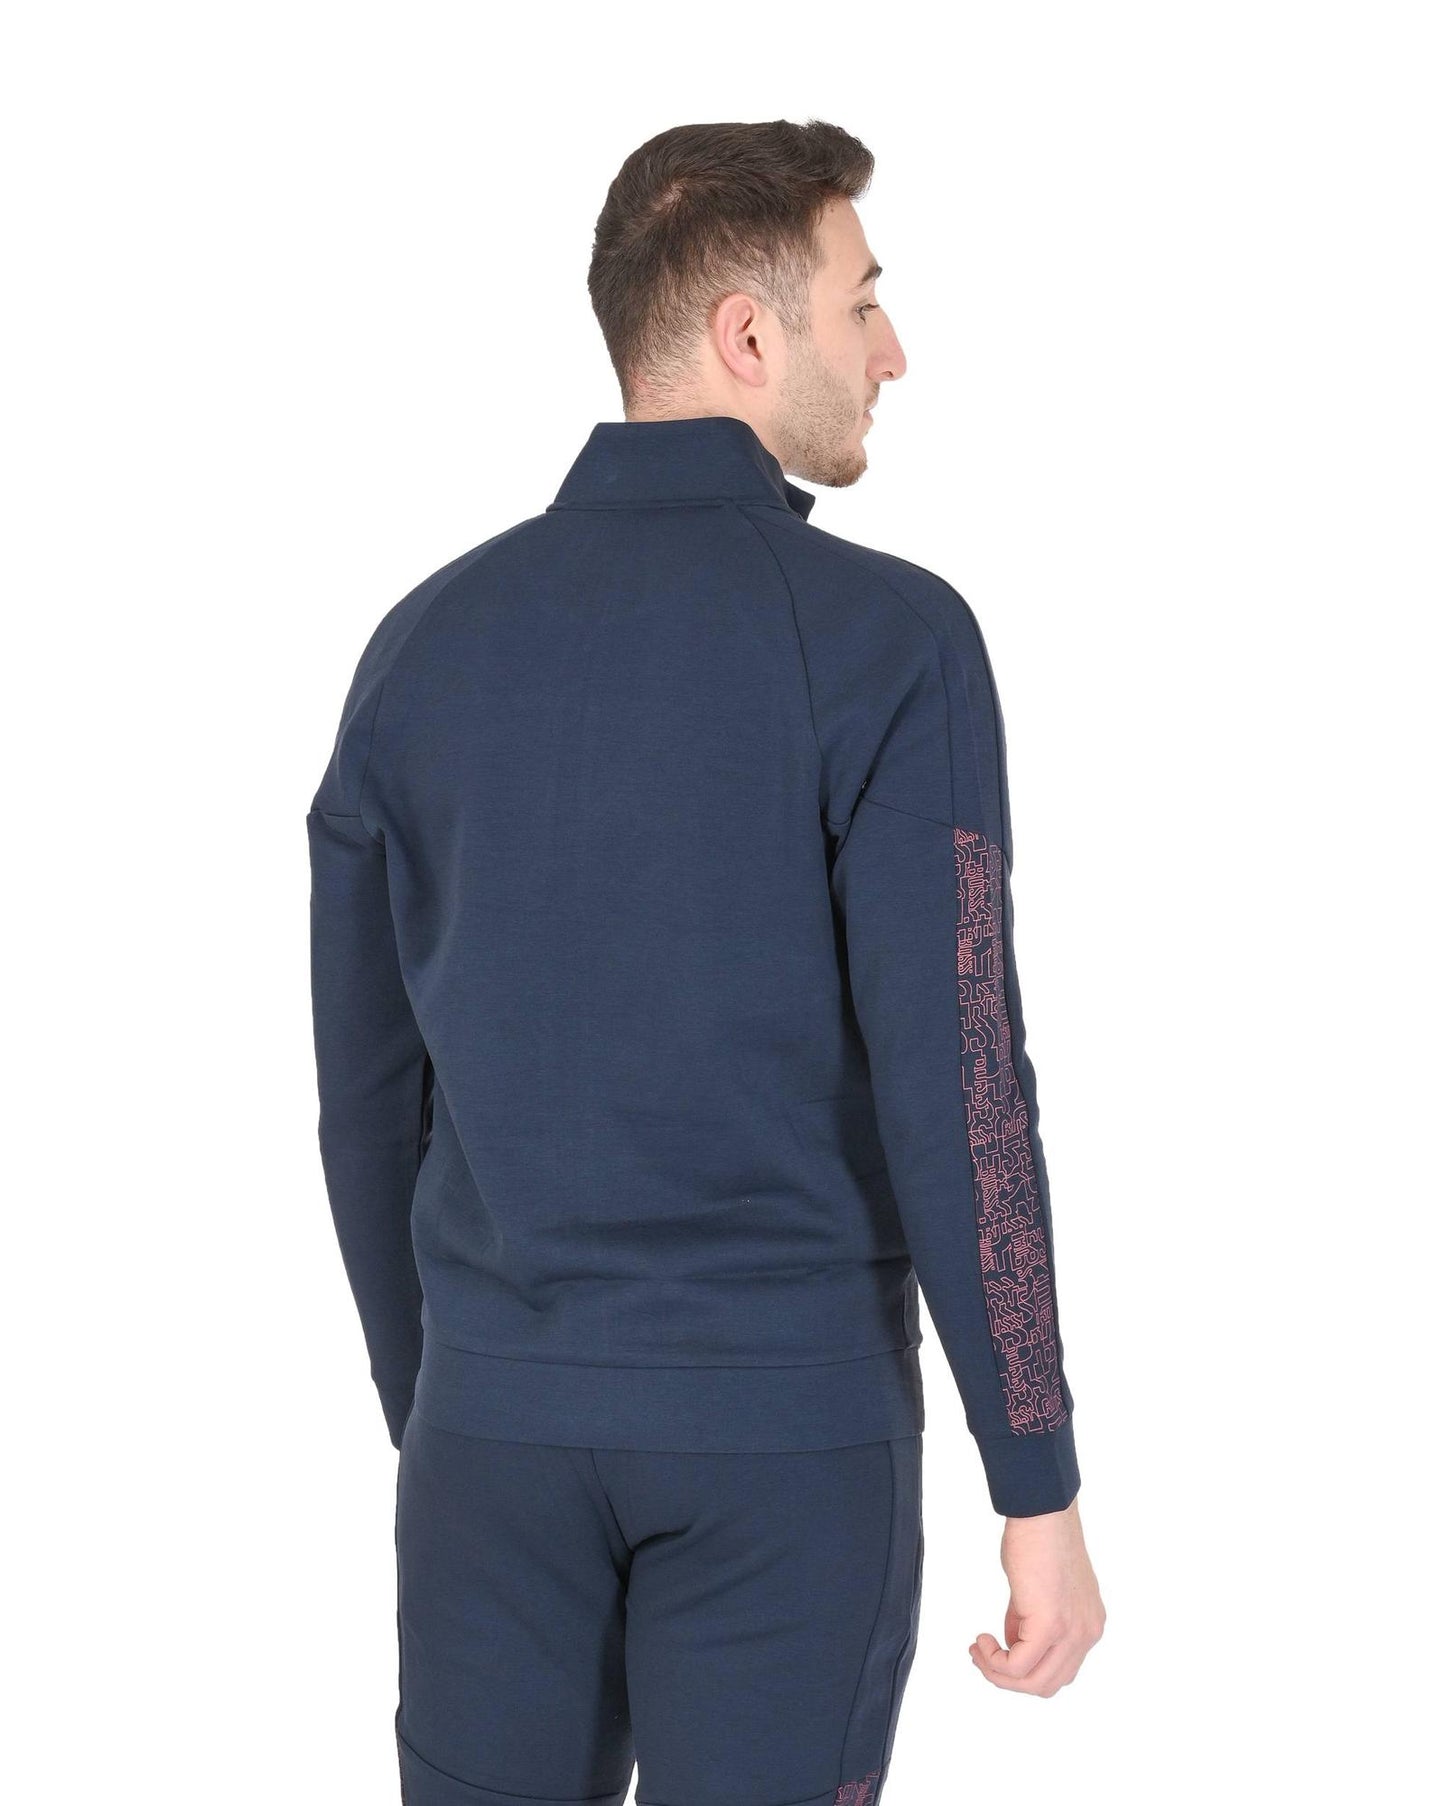 Hugo Boss Men's Navy Cotton Blend Sweatshirt in Navy blue - S